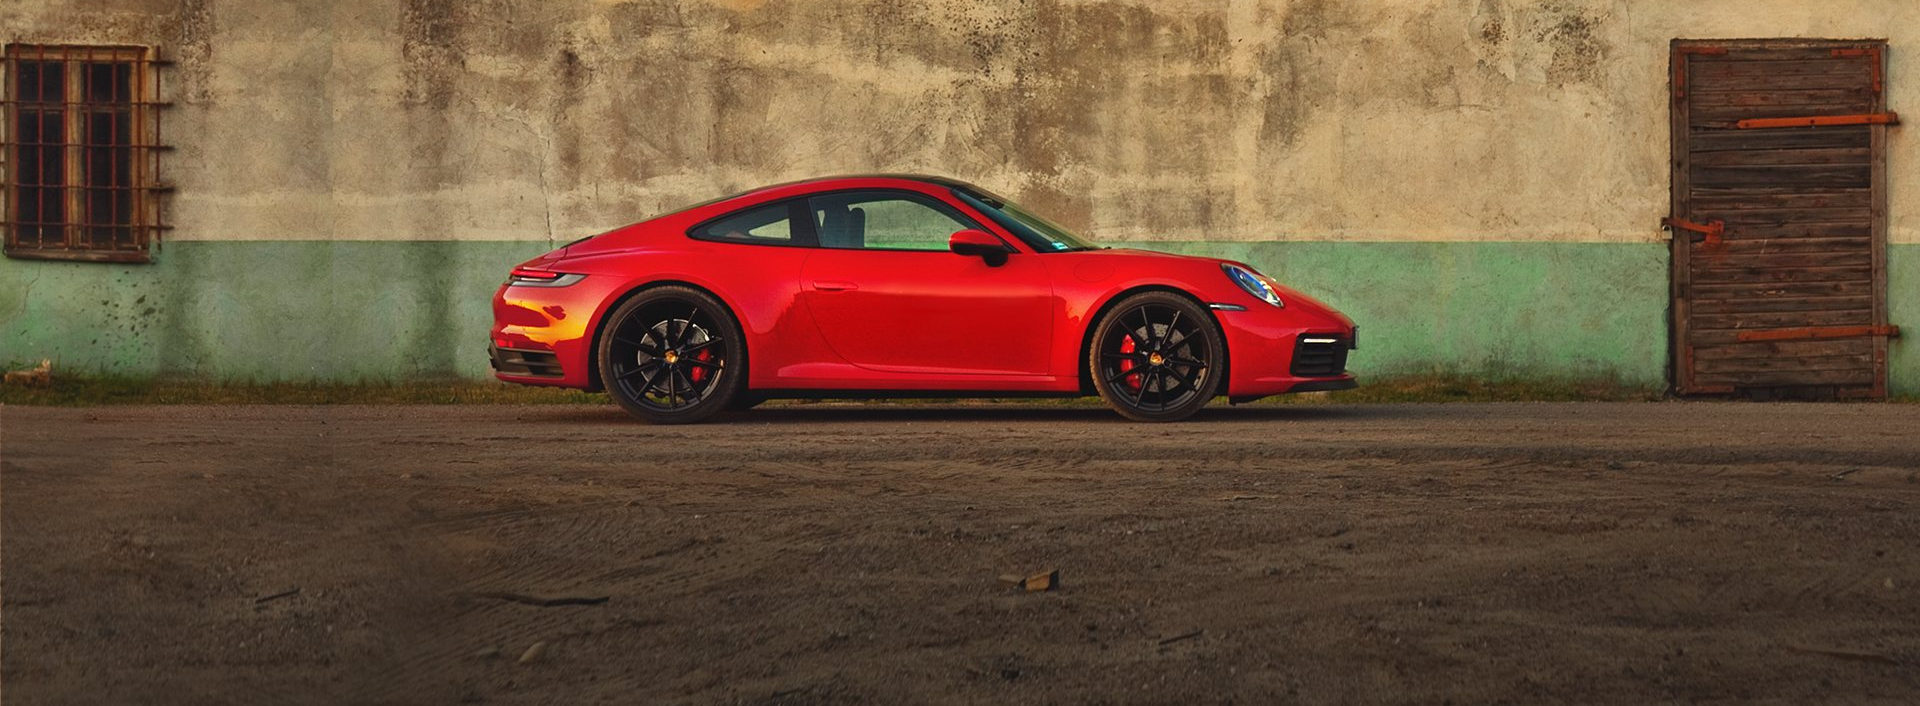 Sprawdź Porsche gotowe do odbioru w warszawskich salonach Porsche